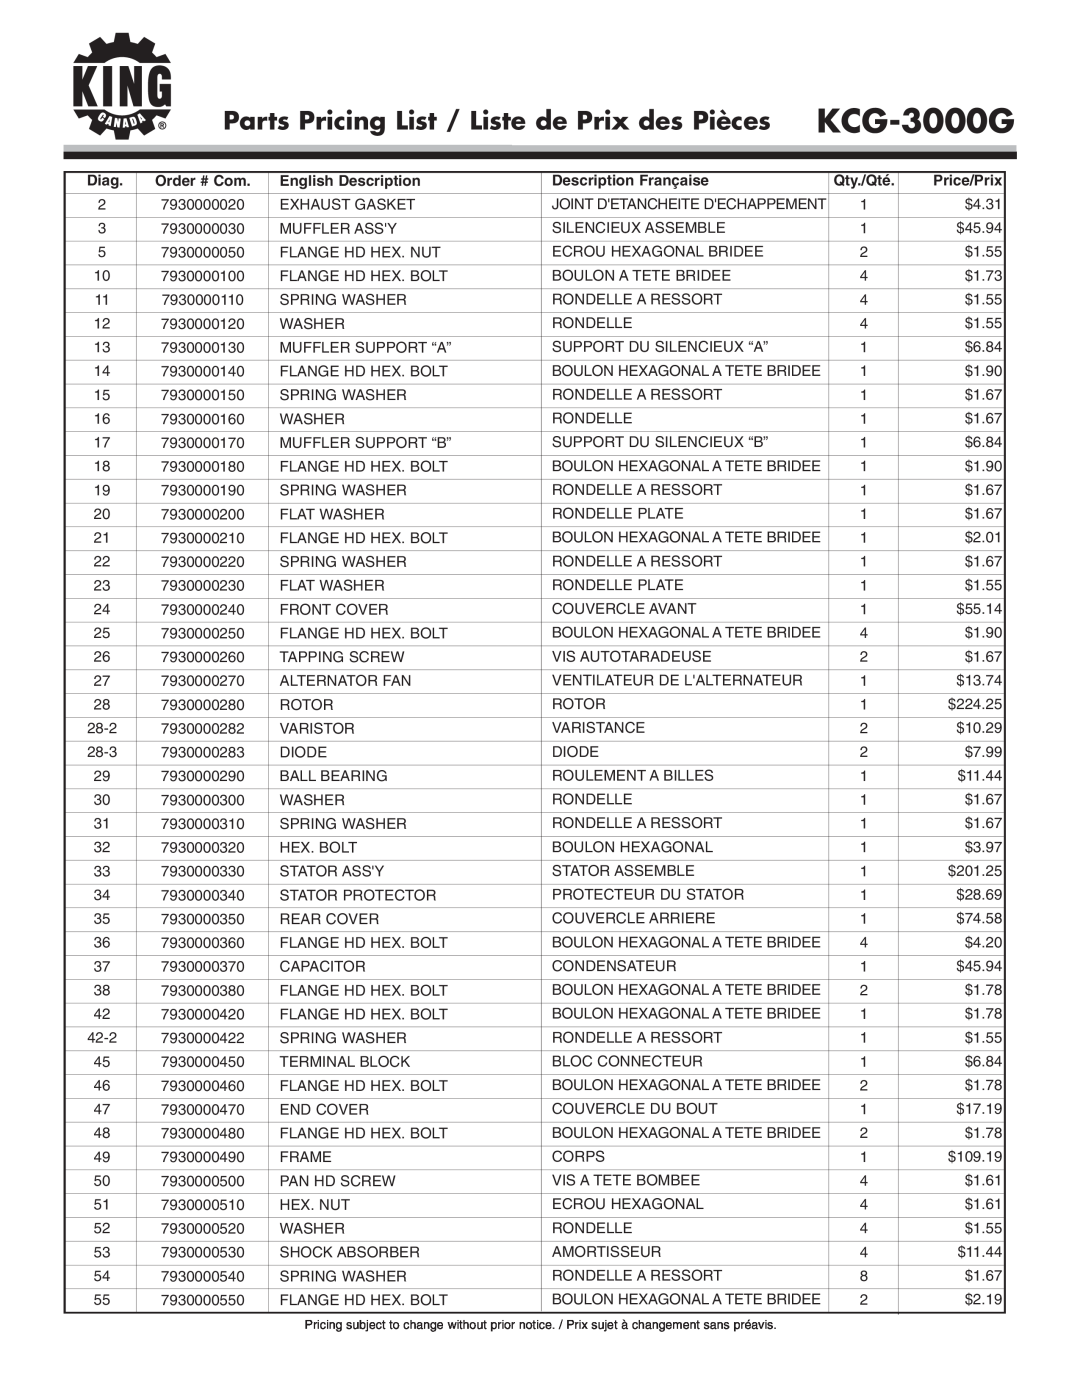 King Canada KCG-3000G Parts Pricing List / Liste de Prix des Pièces, Diag, English Description, Description Française 